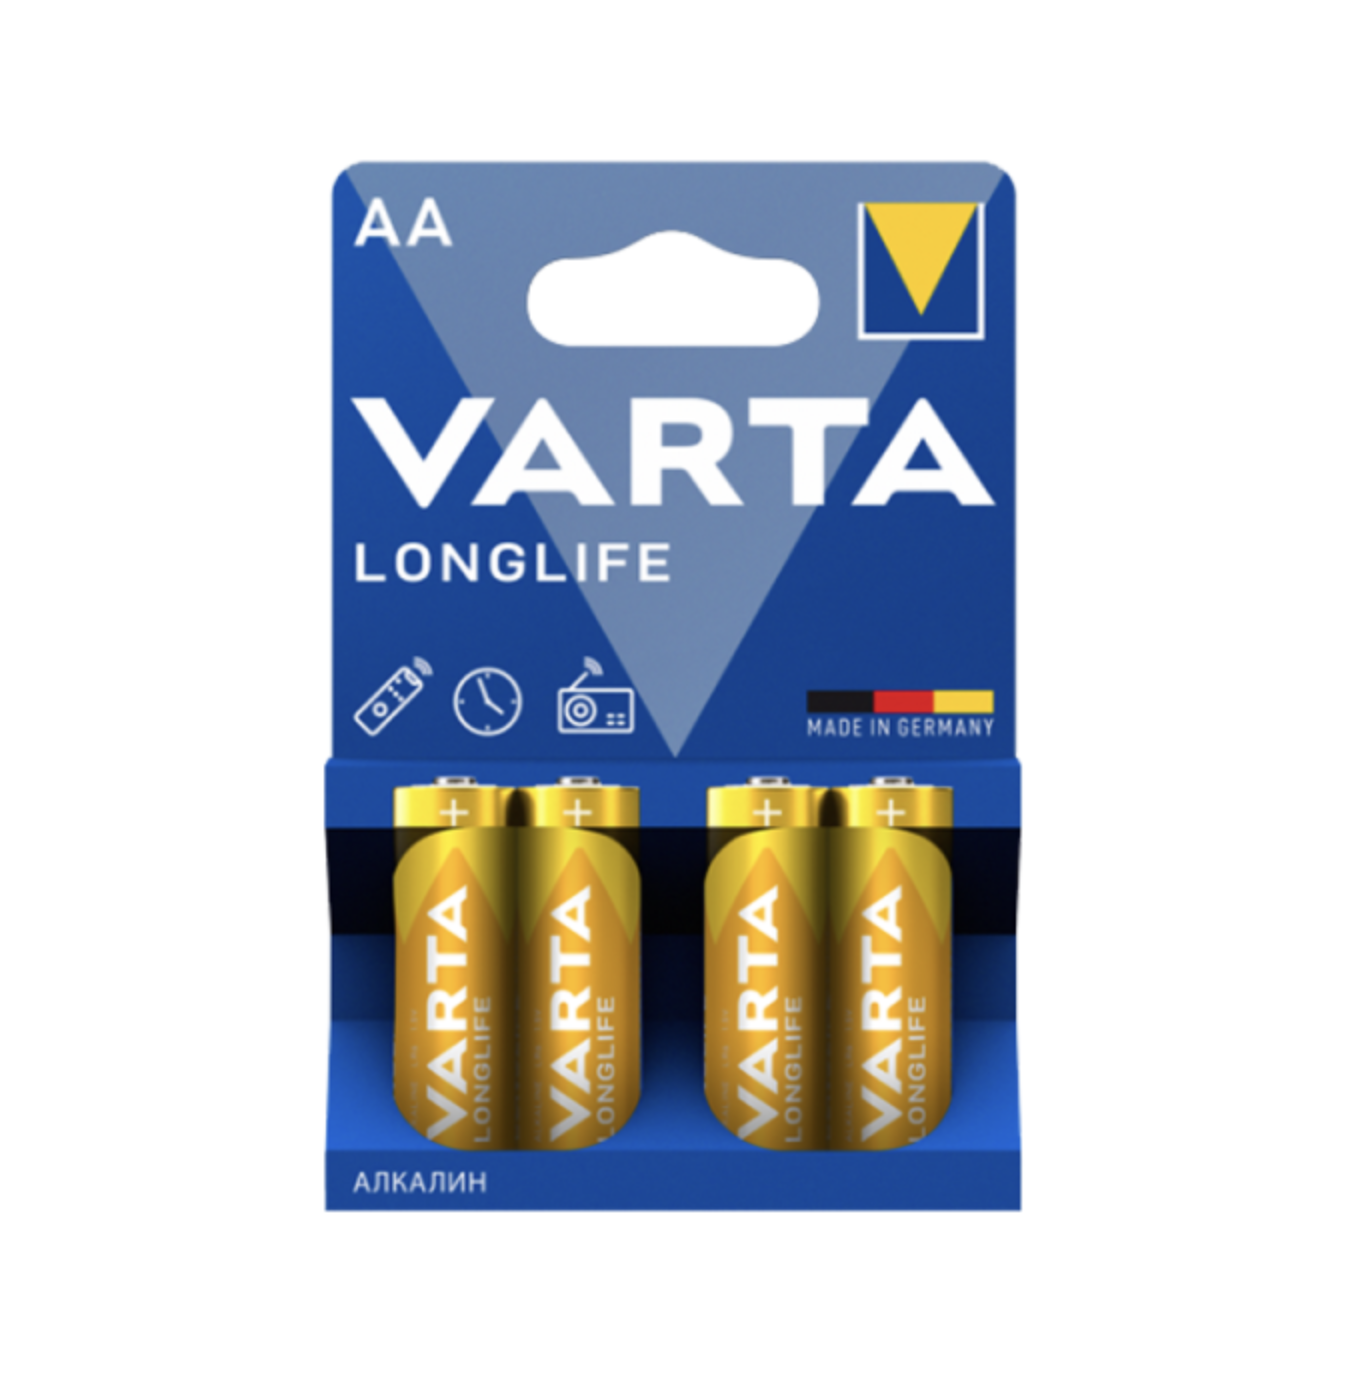   / Varta -  Longlife mignon AA LR6 1,5V 4 